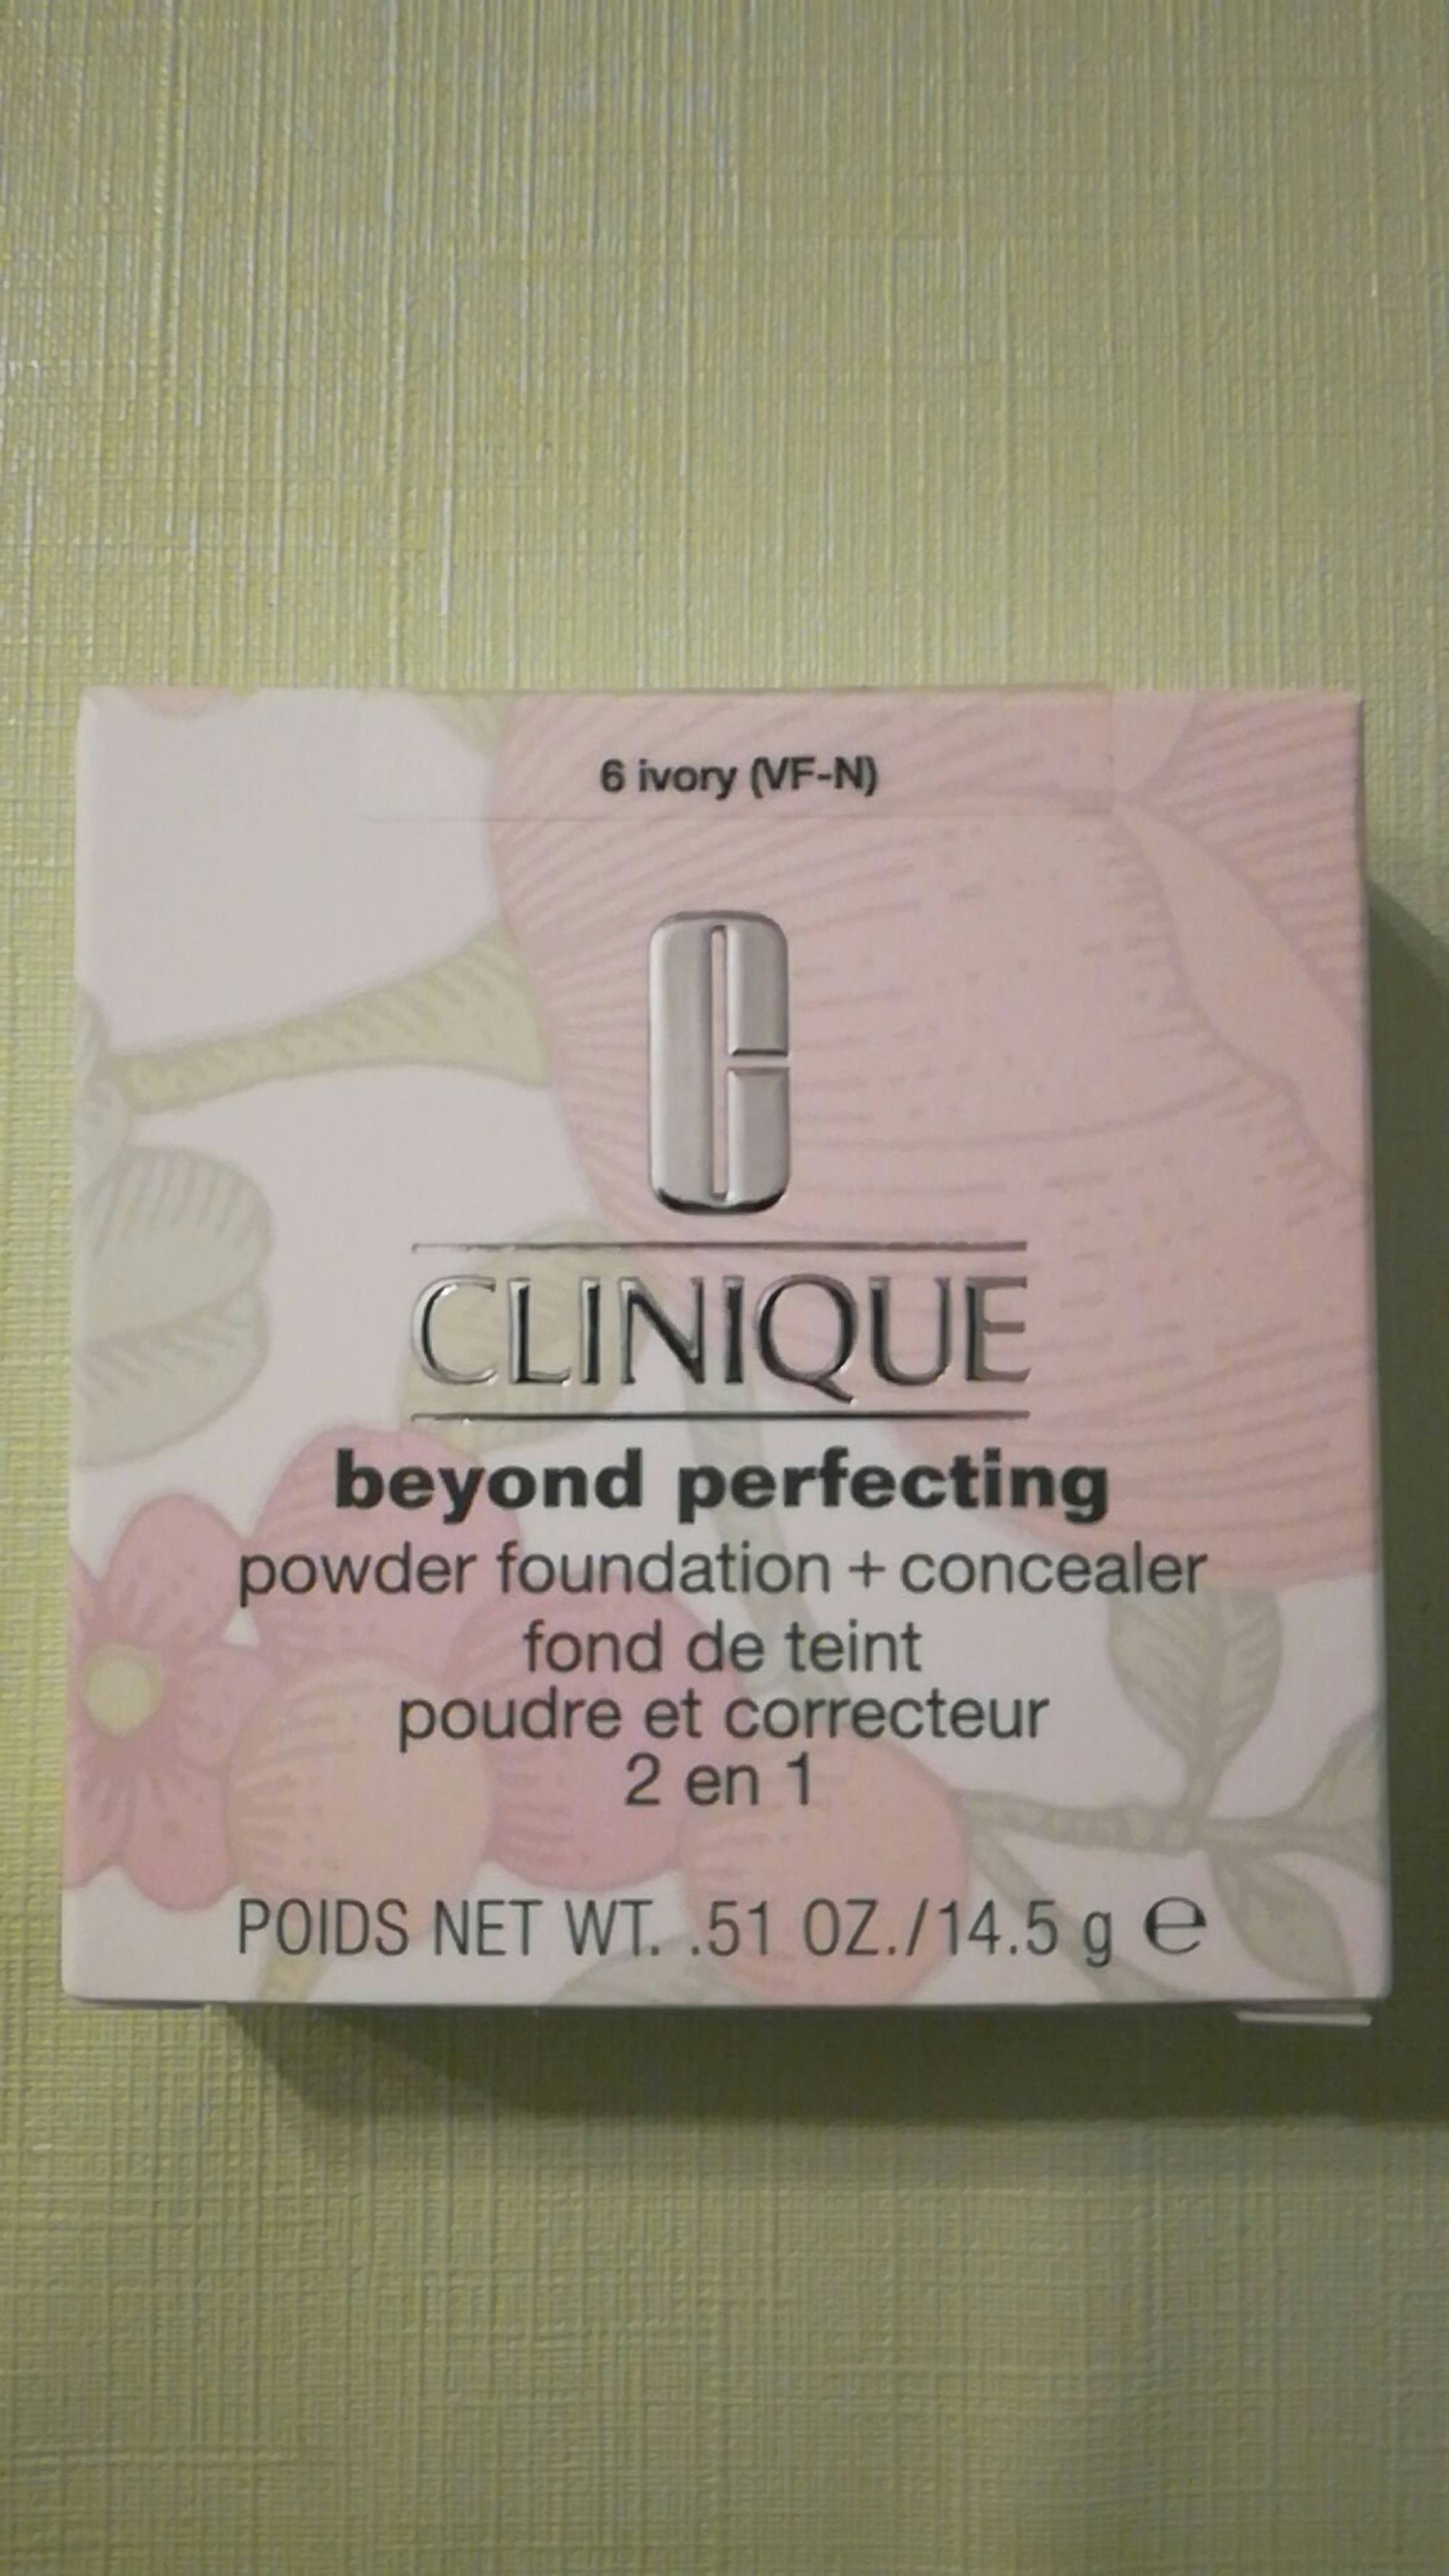 CLINIQUE - Beyond perfecting - Fond de teint poudre et correcteur 2 en 1